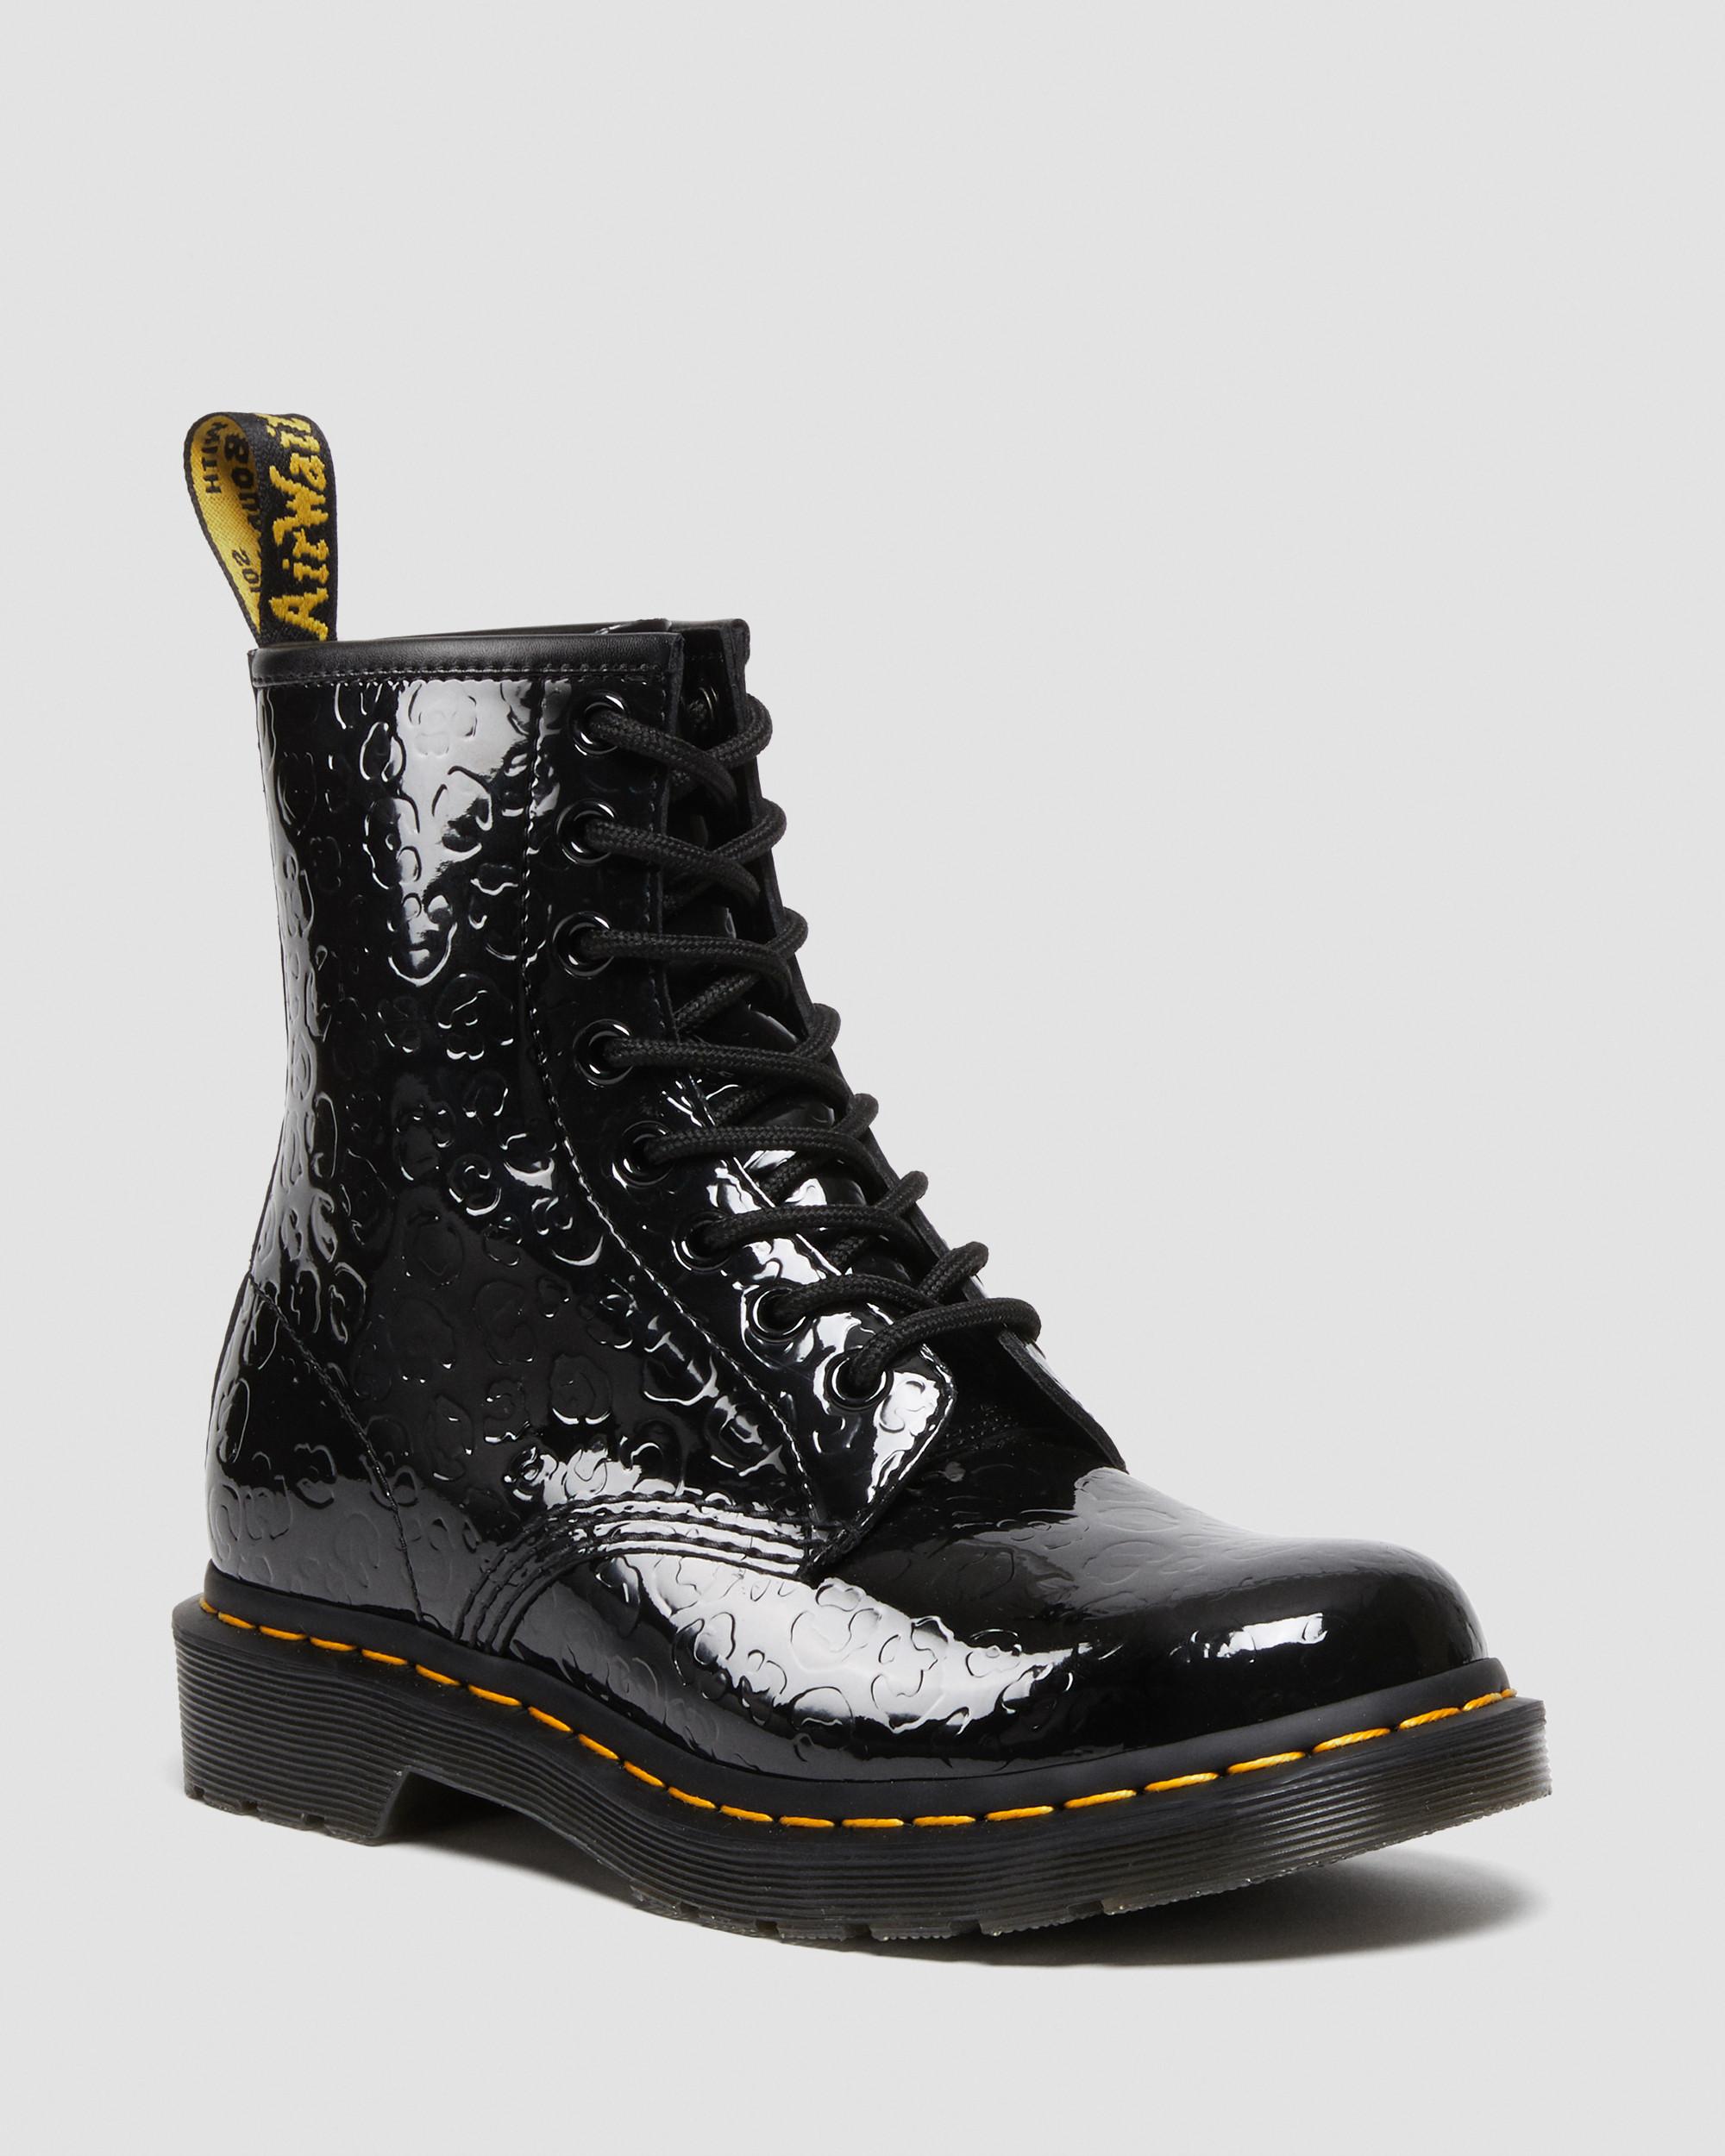 Dr Martens 1461 Leopard Emboss Patent Leather Platform Shoes Size 7 ...